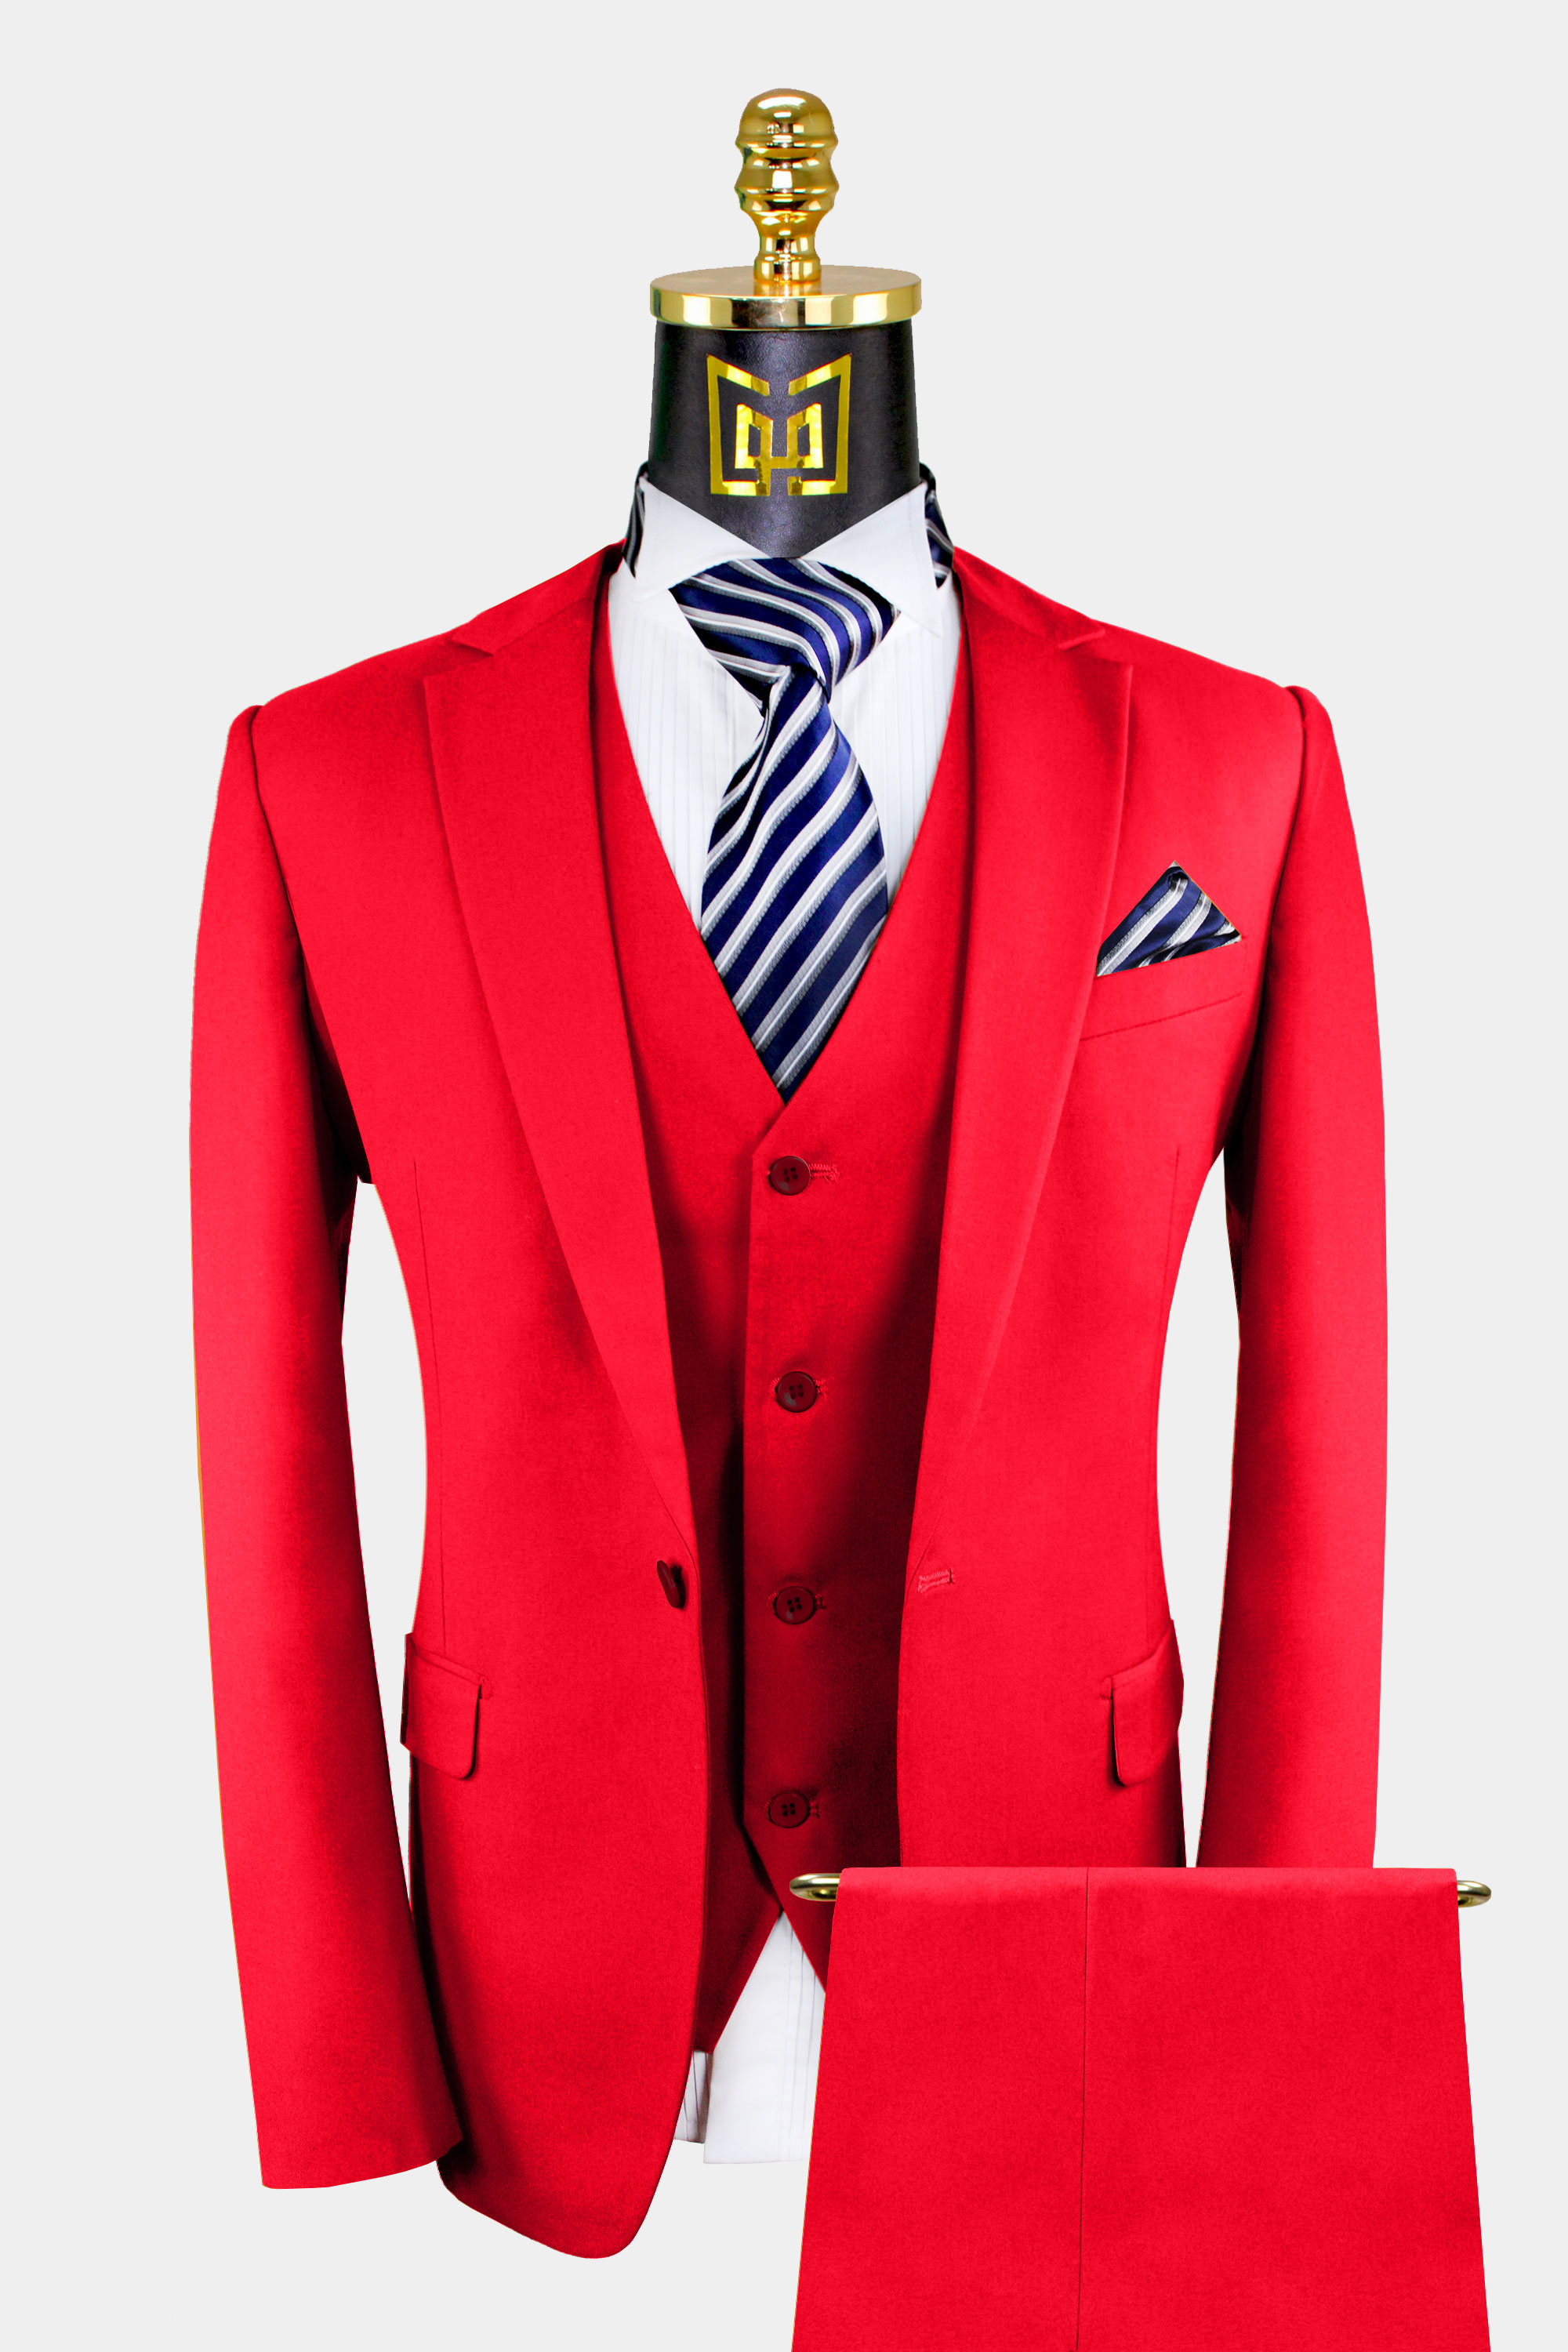 All Red Suit - 3 Piece | Gentleman's Guru